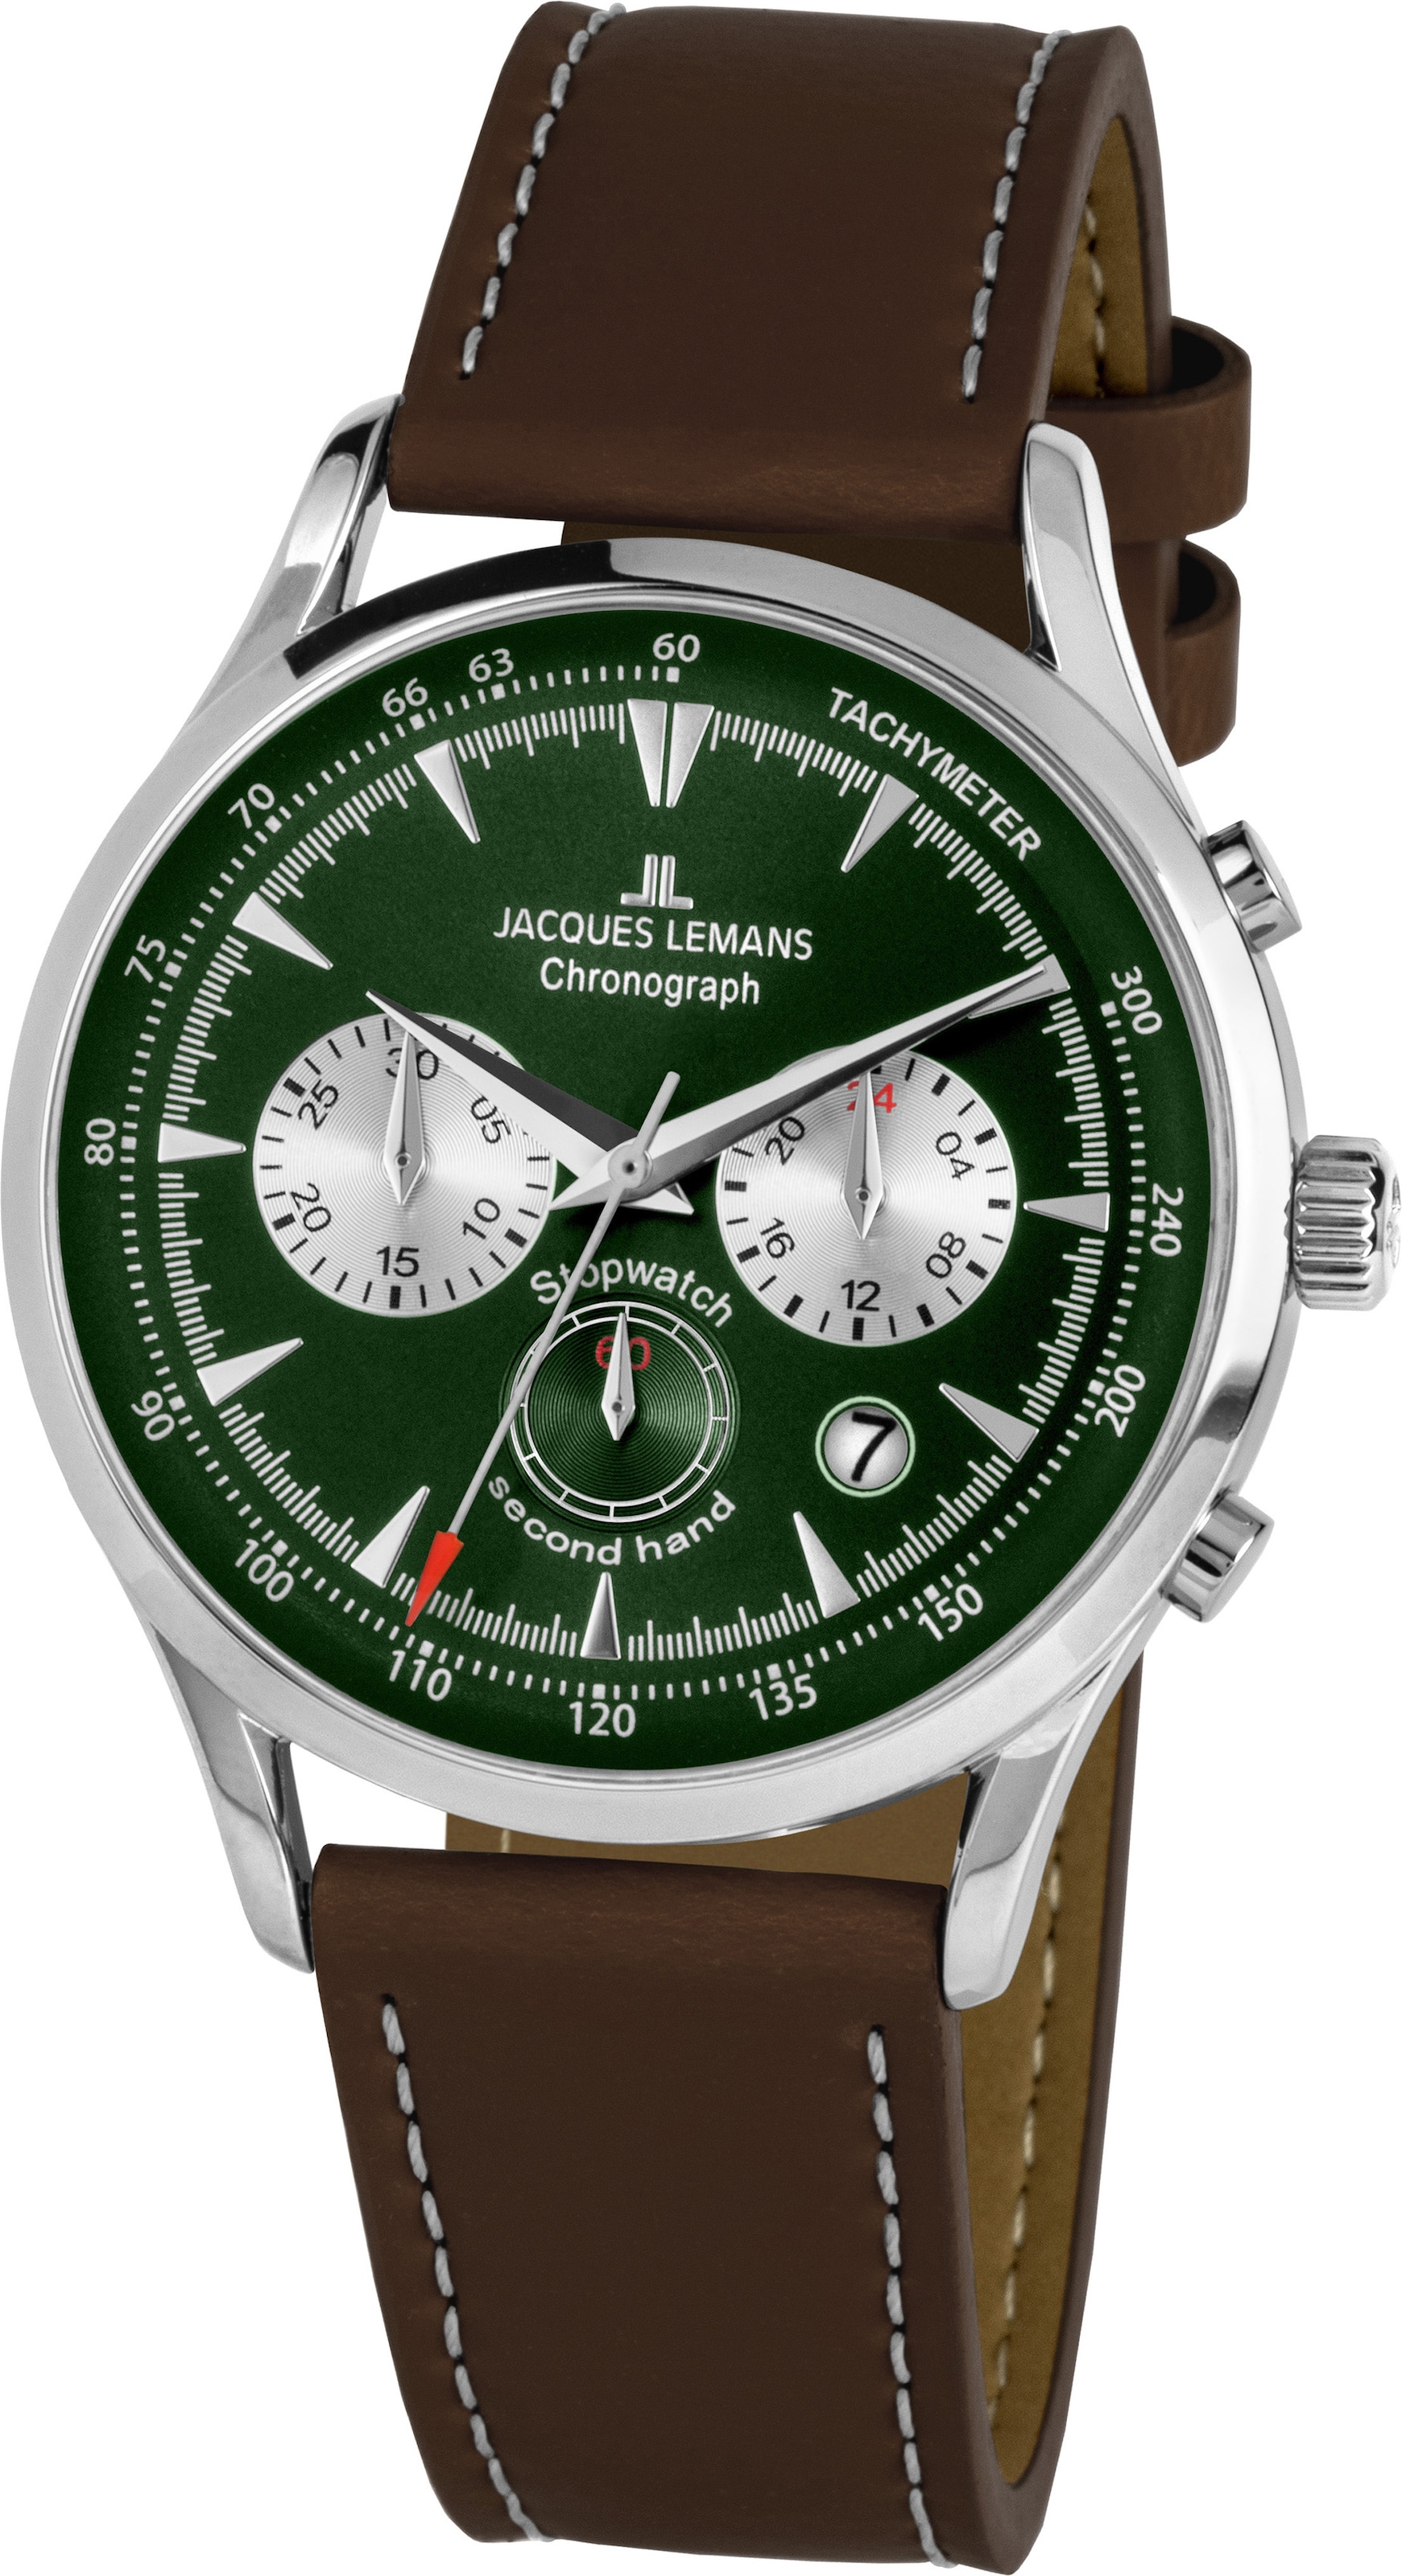 Jacques Lemans Uhren günstig kaufen ▻ | Quarzuhren